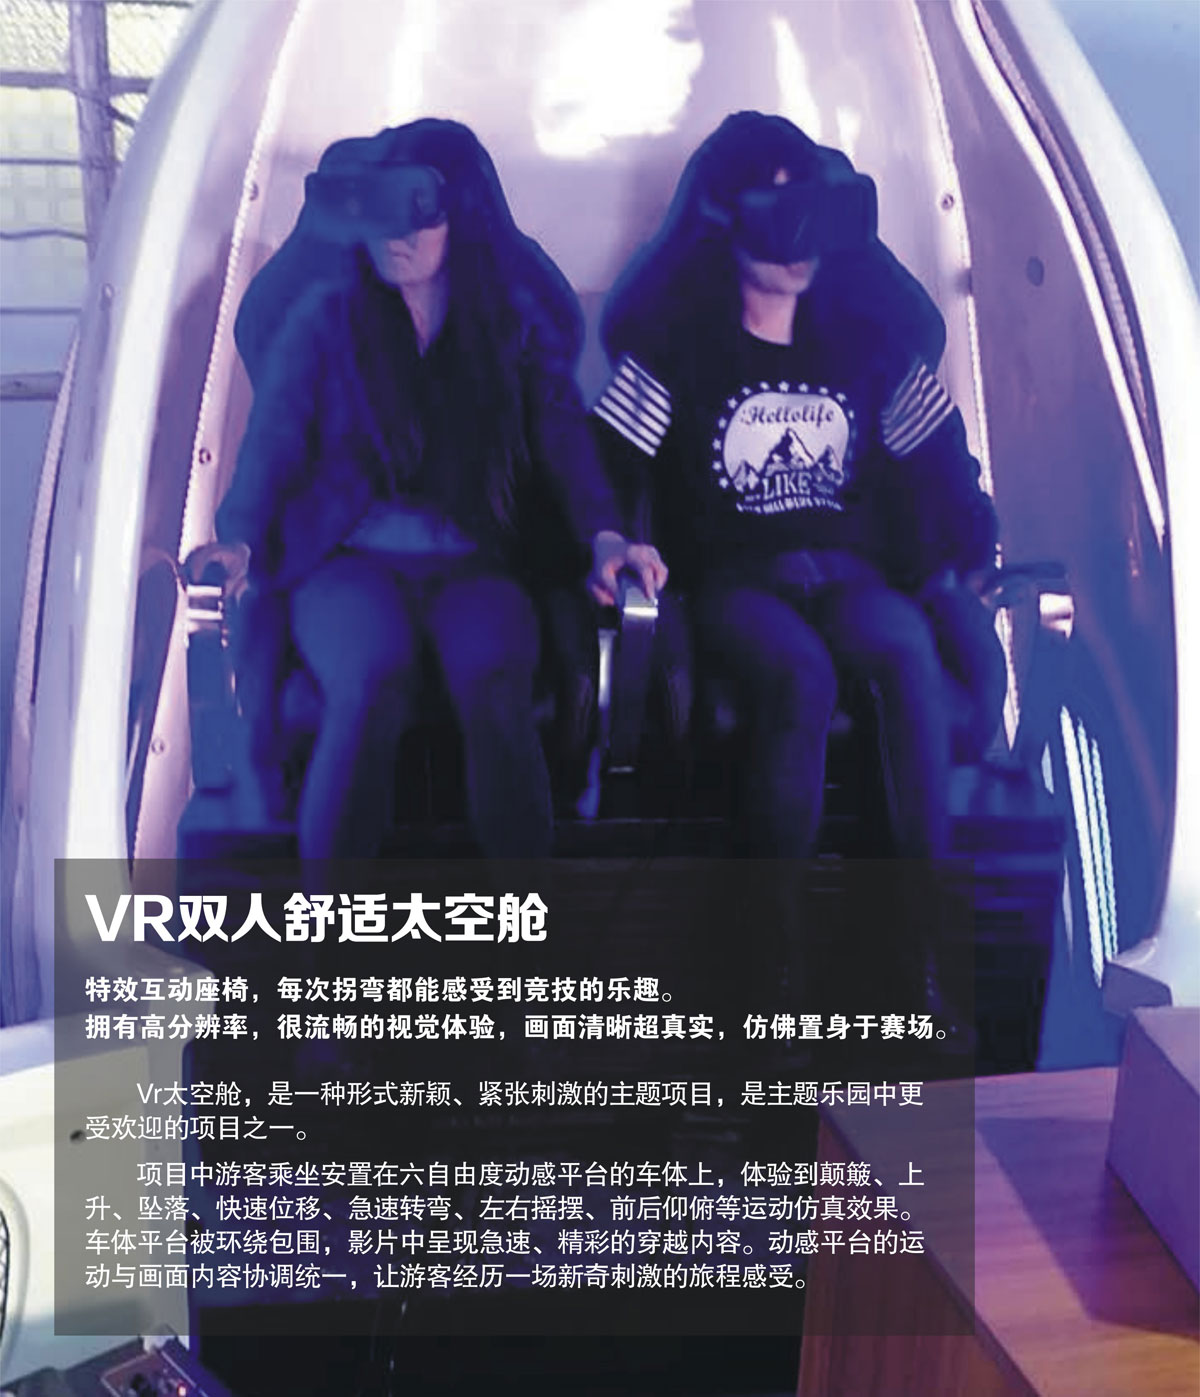 动感影院VR双人舒适太空舱.jpg